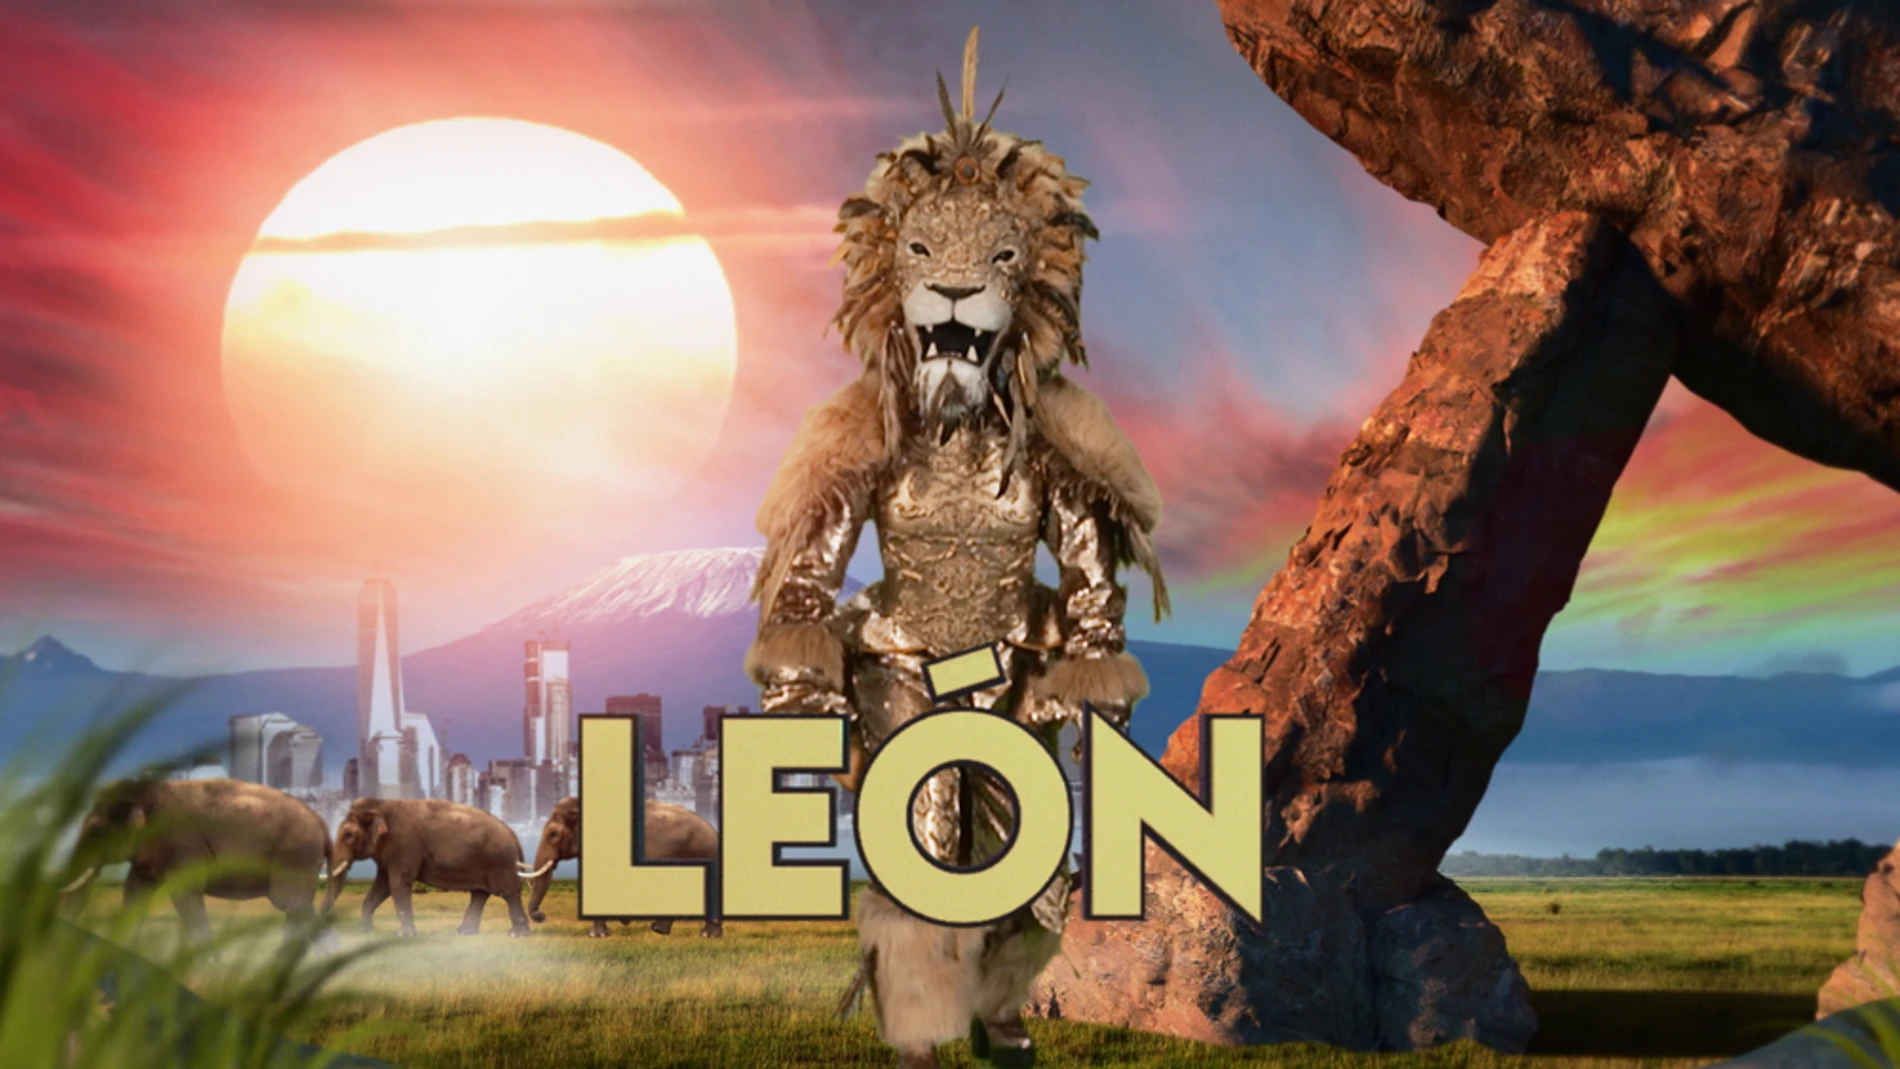 ¿Qué personaje famoso se esconde detrás de la máscara del León?